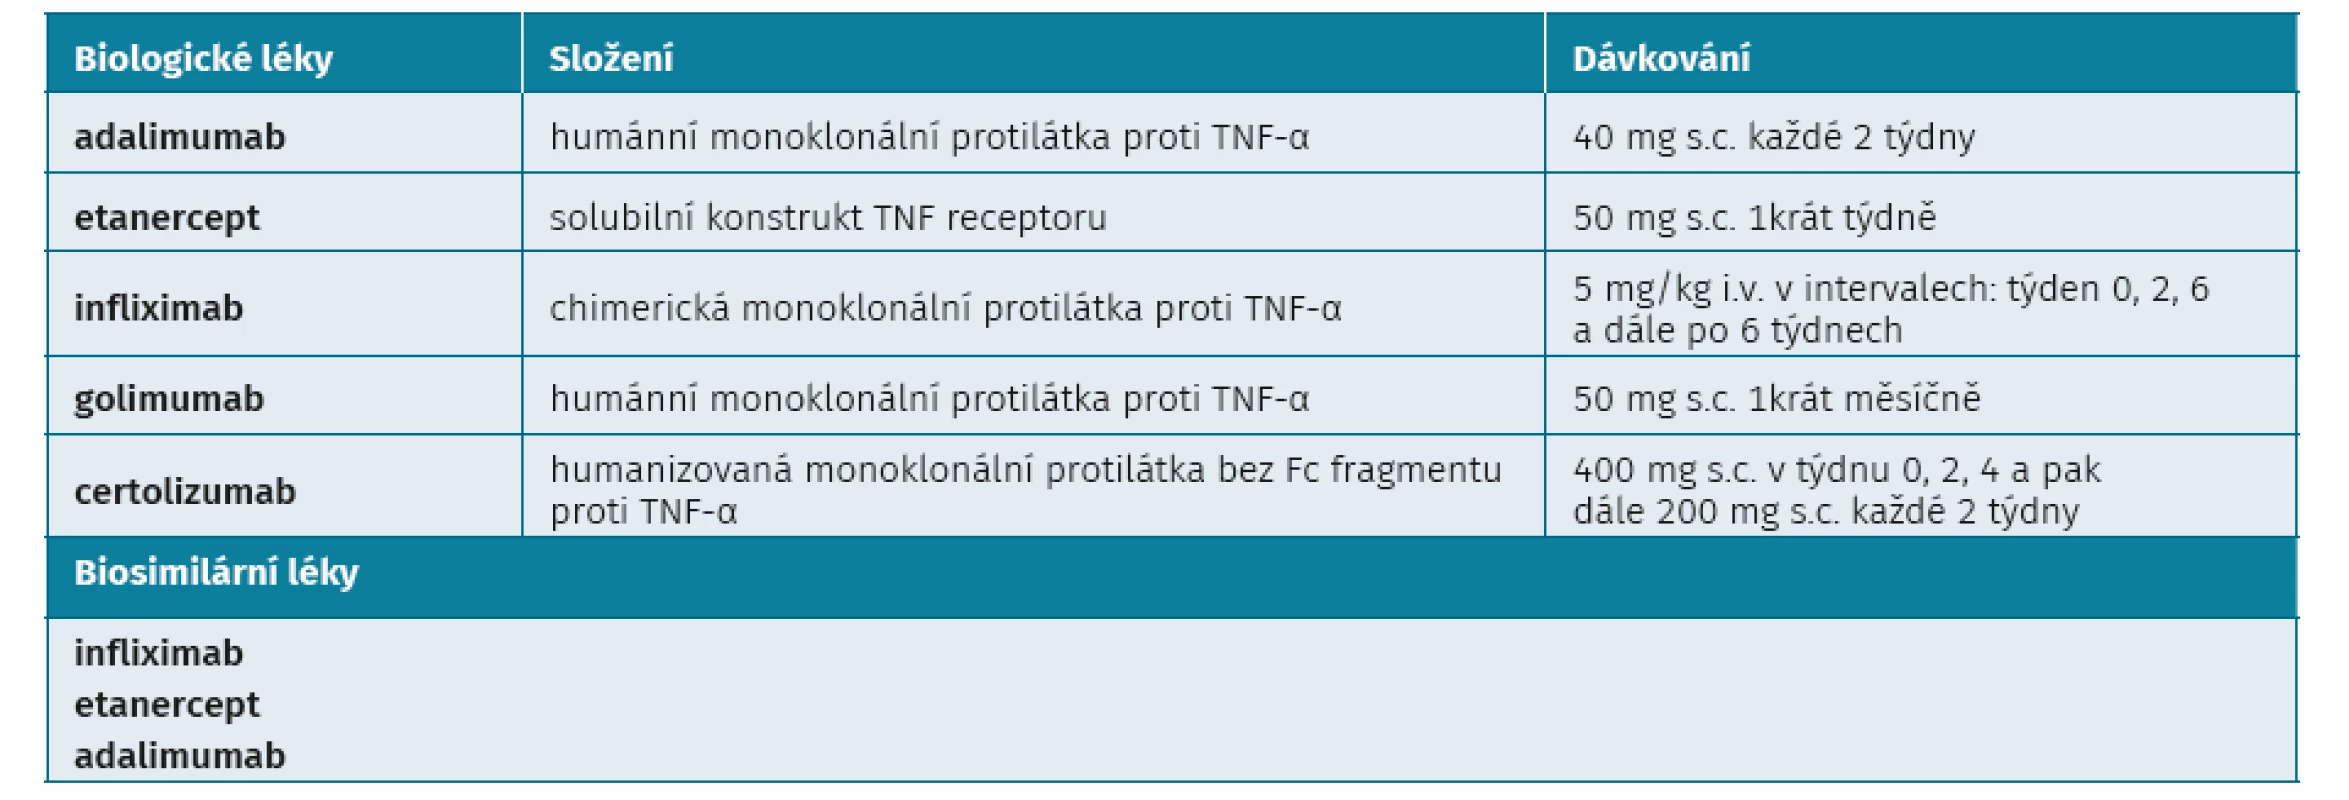 Anti-TNF léky pro léčbu SpA v České republice